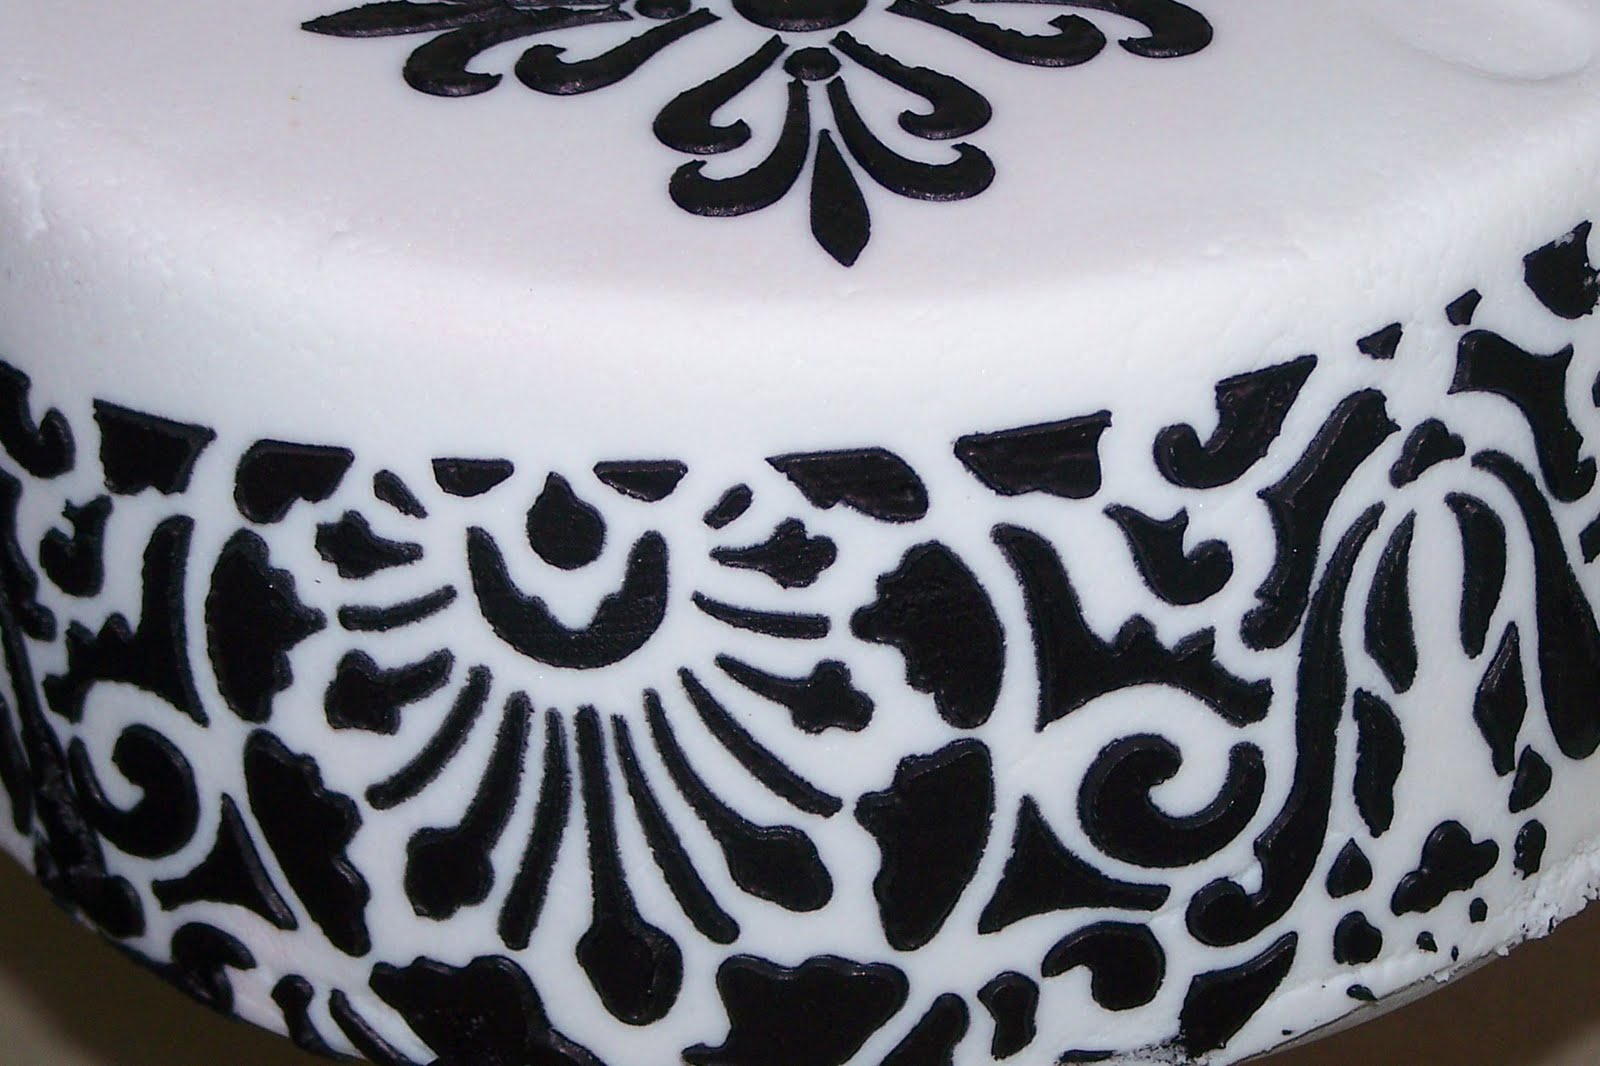 damask wedding cake